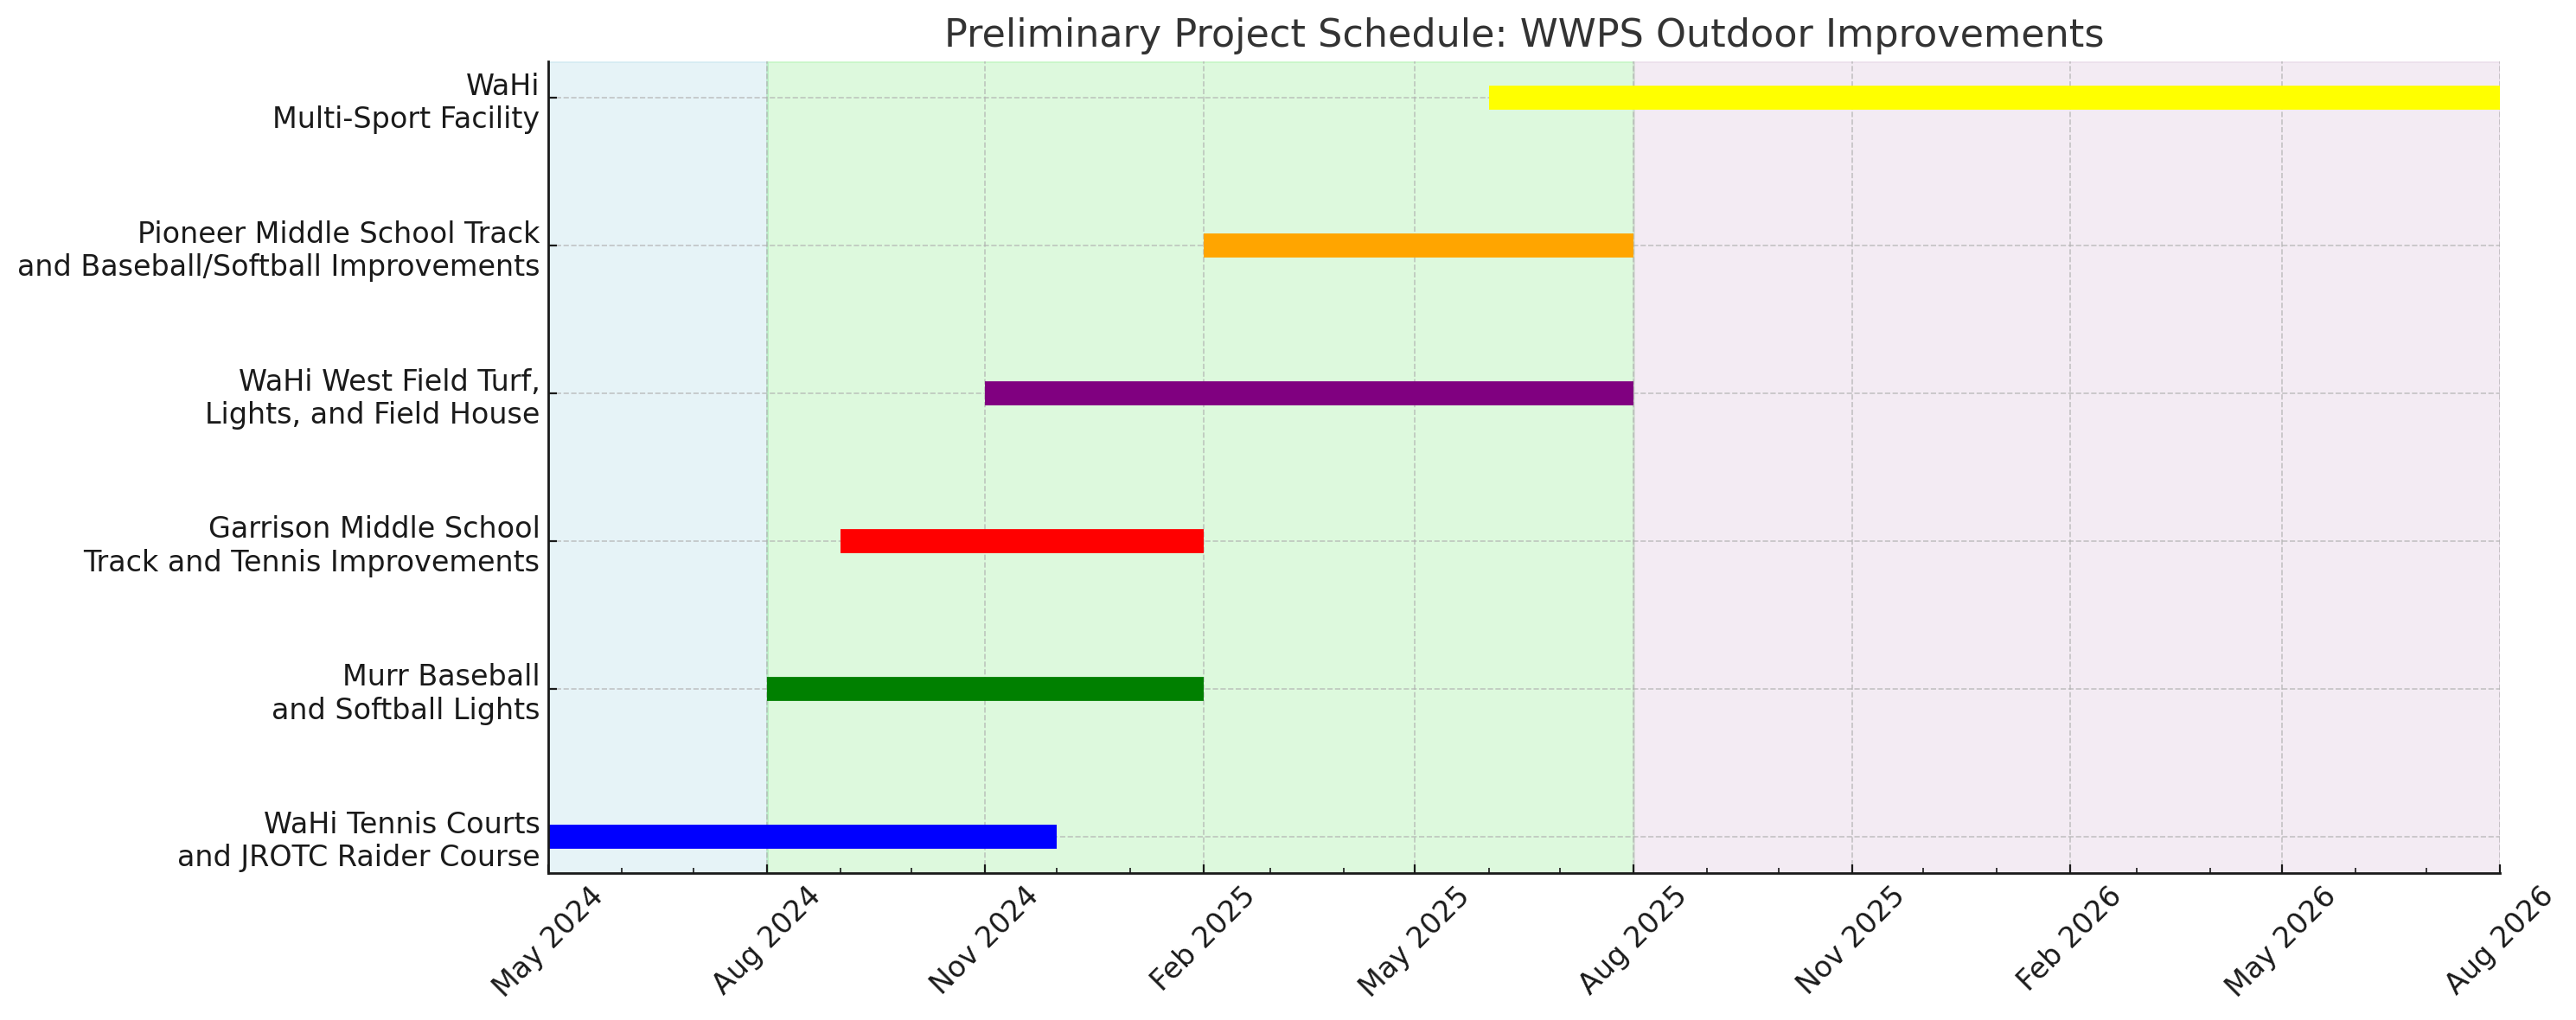 Cronograma Preliminar do Projeto WWPS Ajustado 2